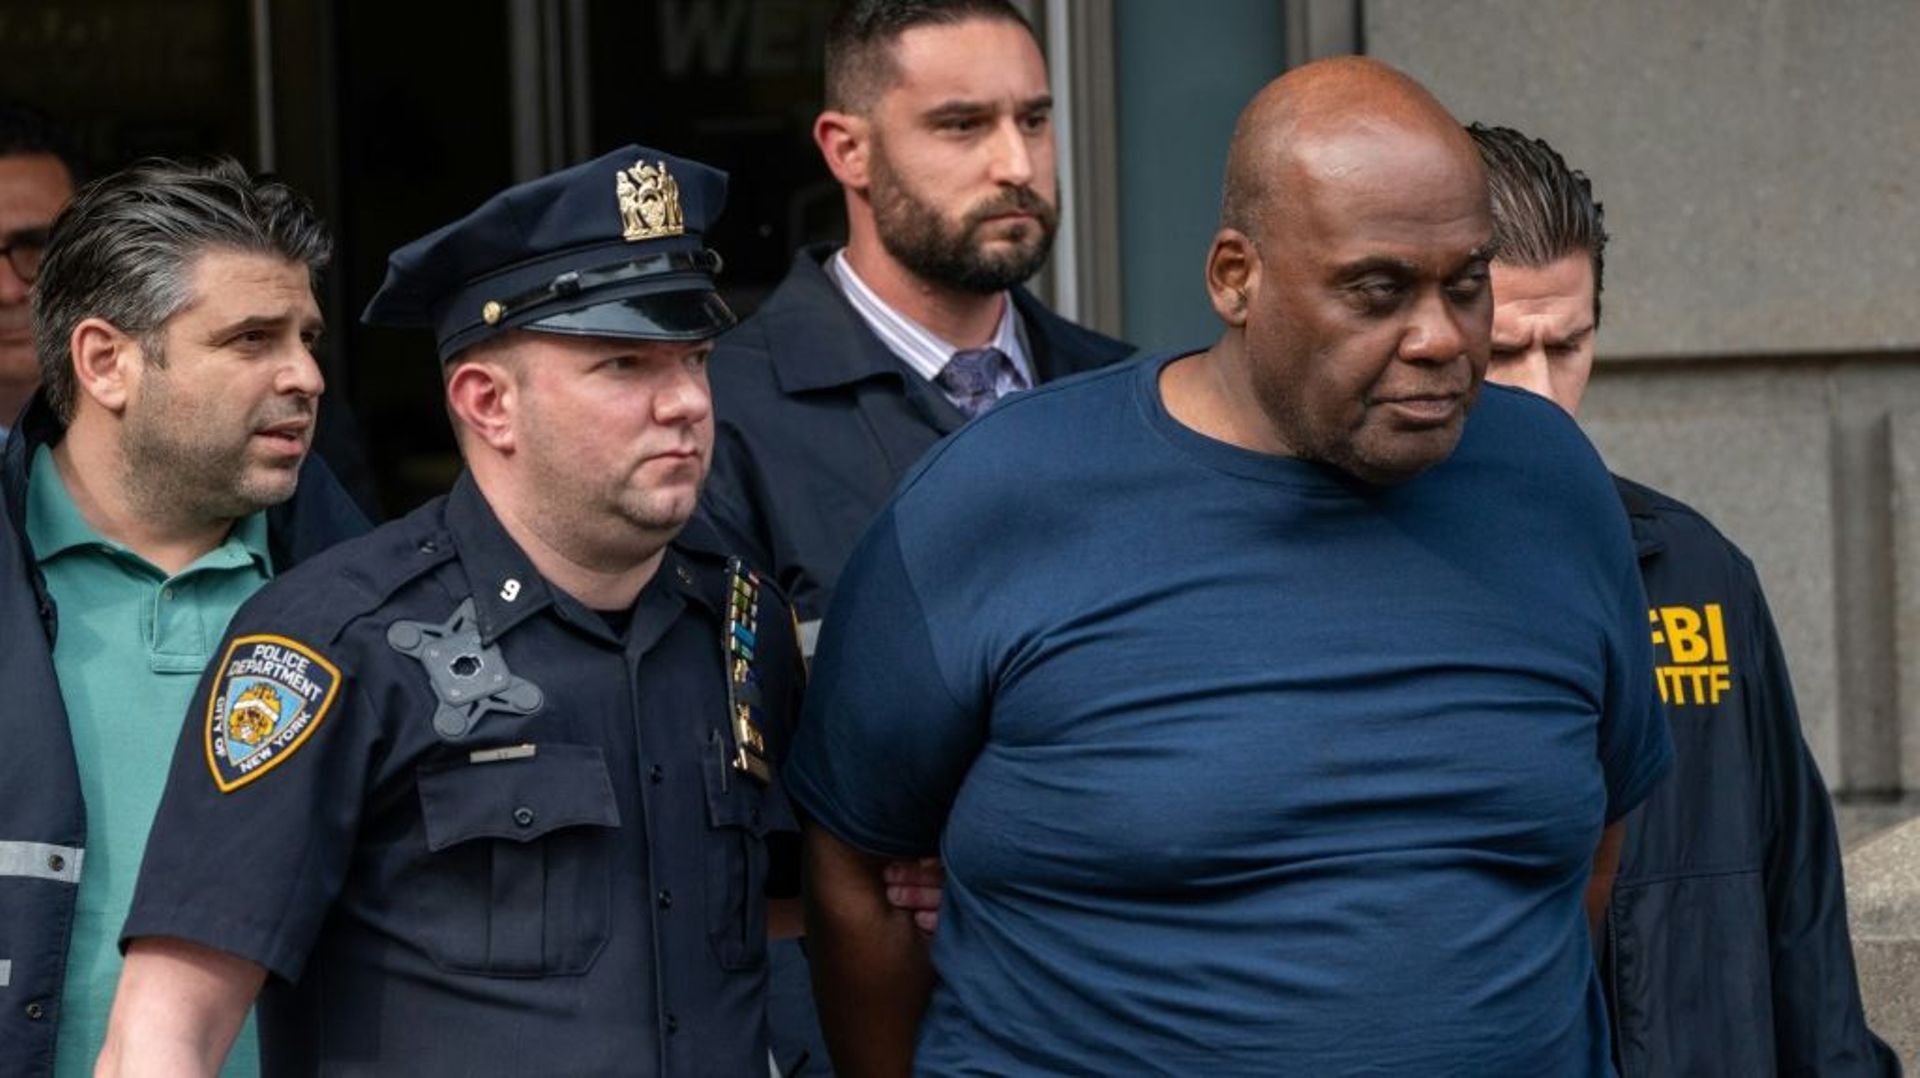 Frank Jmes (c) soupçonné d’avoir tiré dans le métro de New York, escorté par des policiers peu après son arrestation, le 13 avril 2022